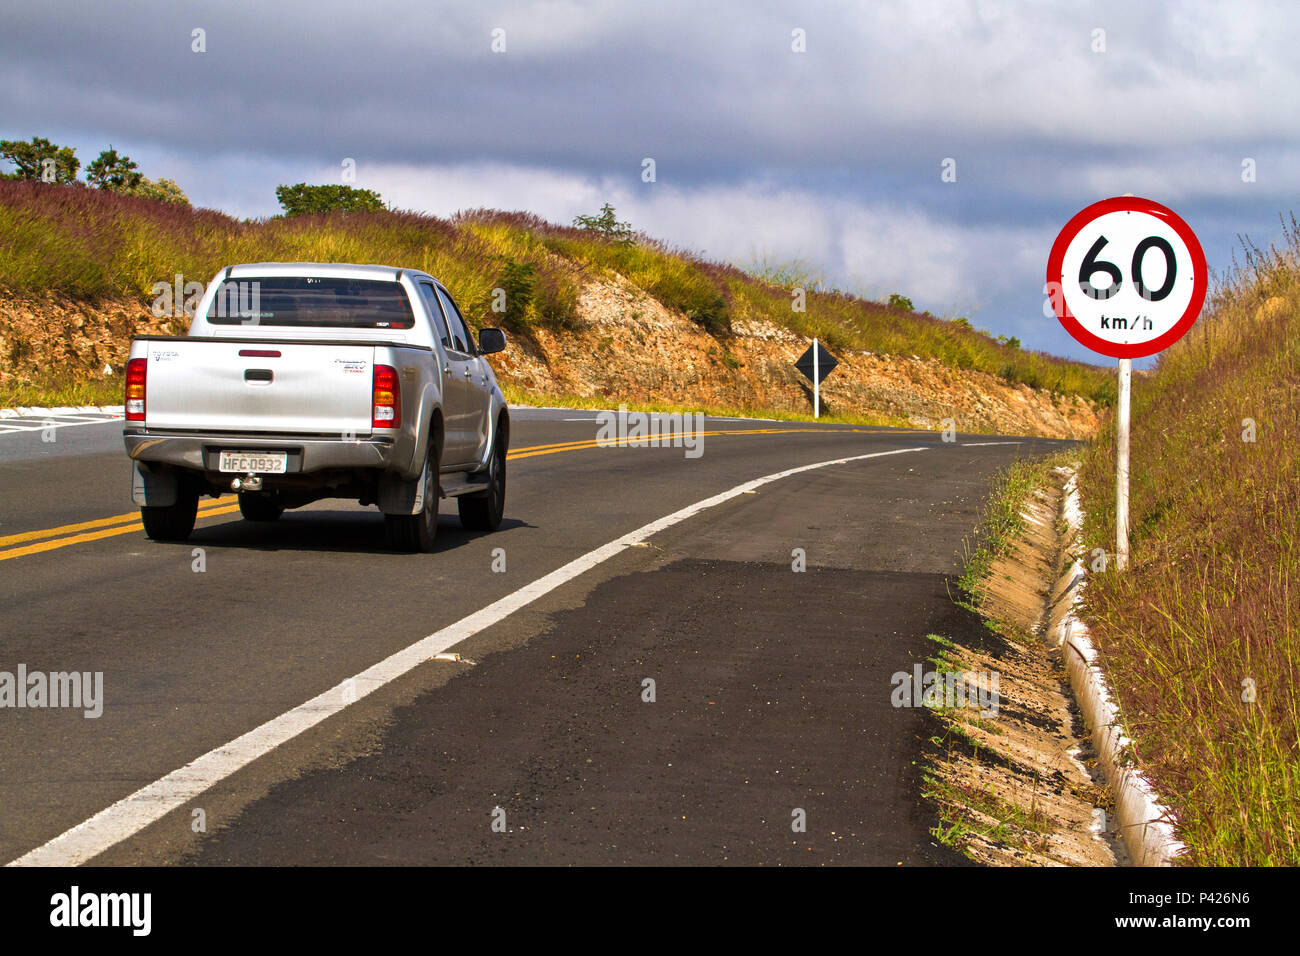 Placa de Velocidade Máxima Permitida; Placa de 60 km/h; Placa de Estrada de Minas Gerais; Rodovia MG 050; Minas Gerais; Sudeste; Brasil Stock Photo